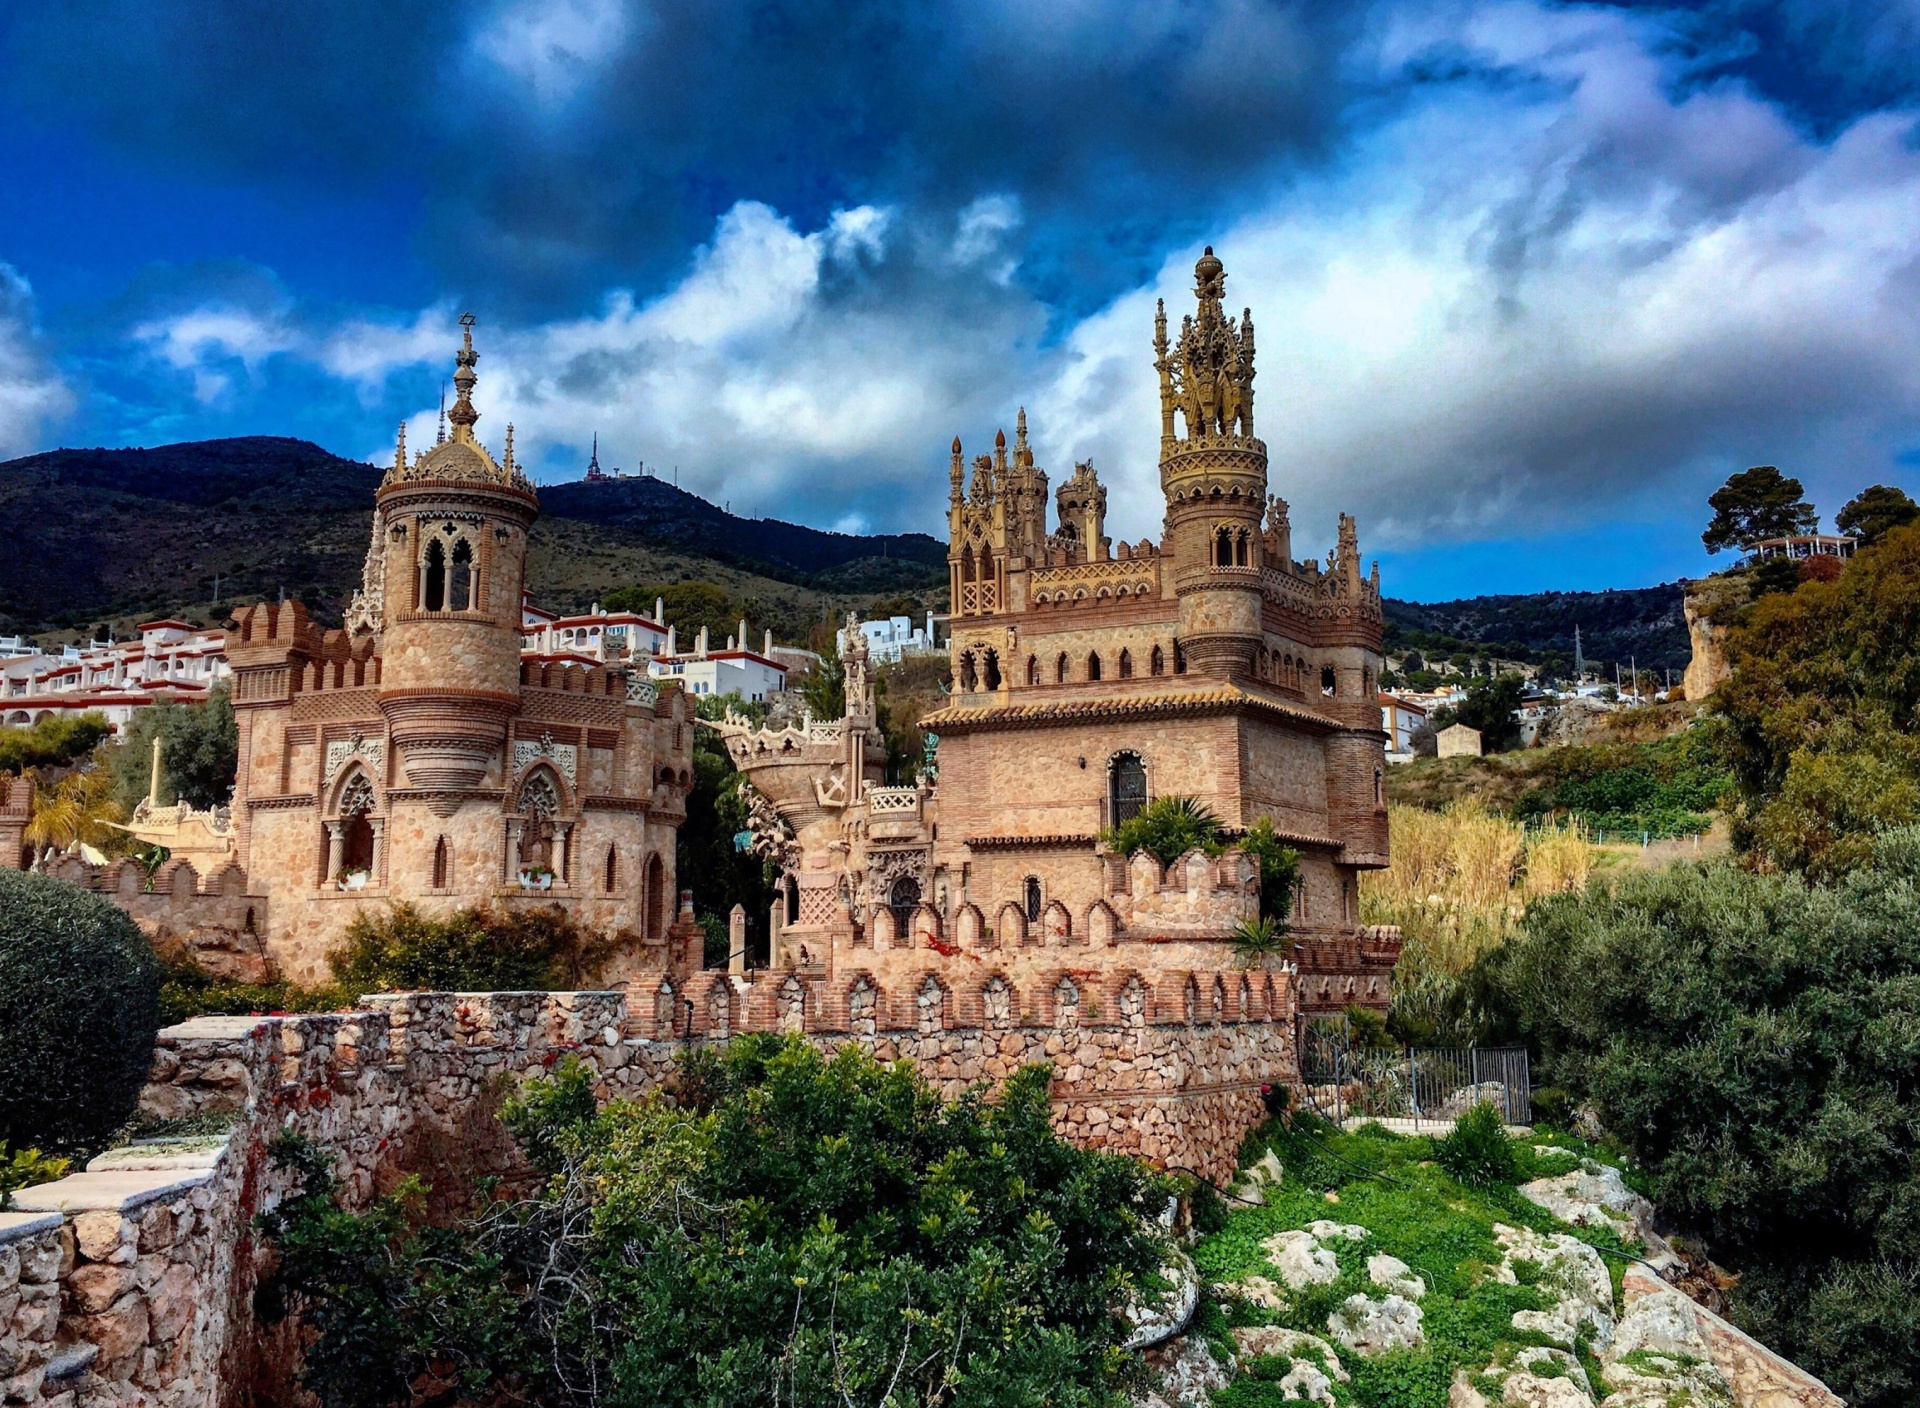 Fondo de pantalla Castillo de Colomares in Spain Benalmadena 1920x1408